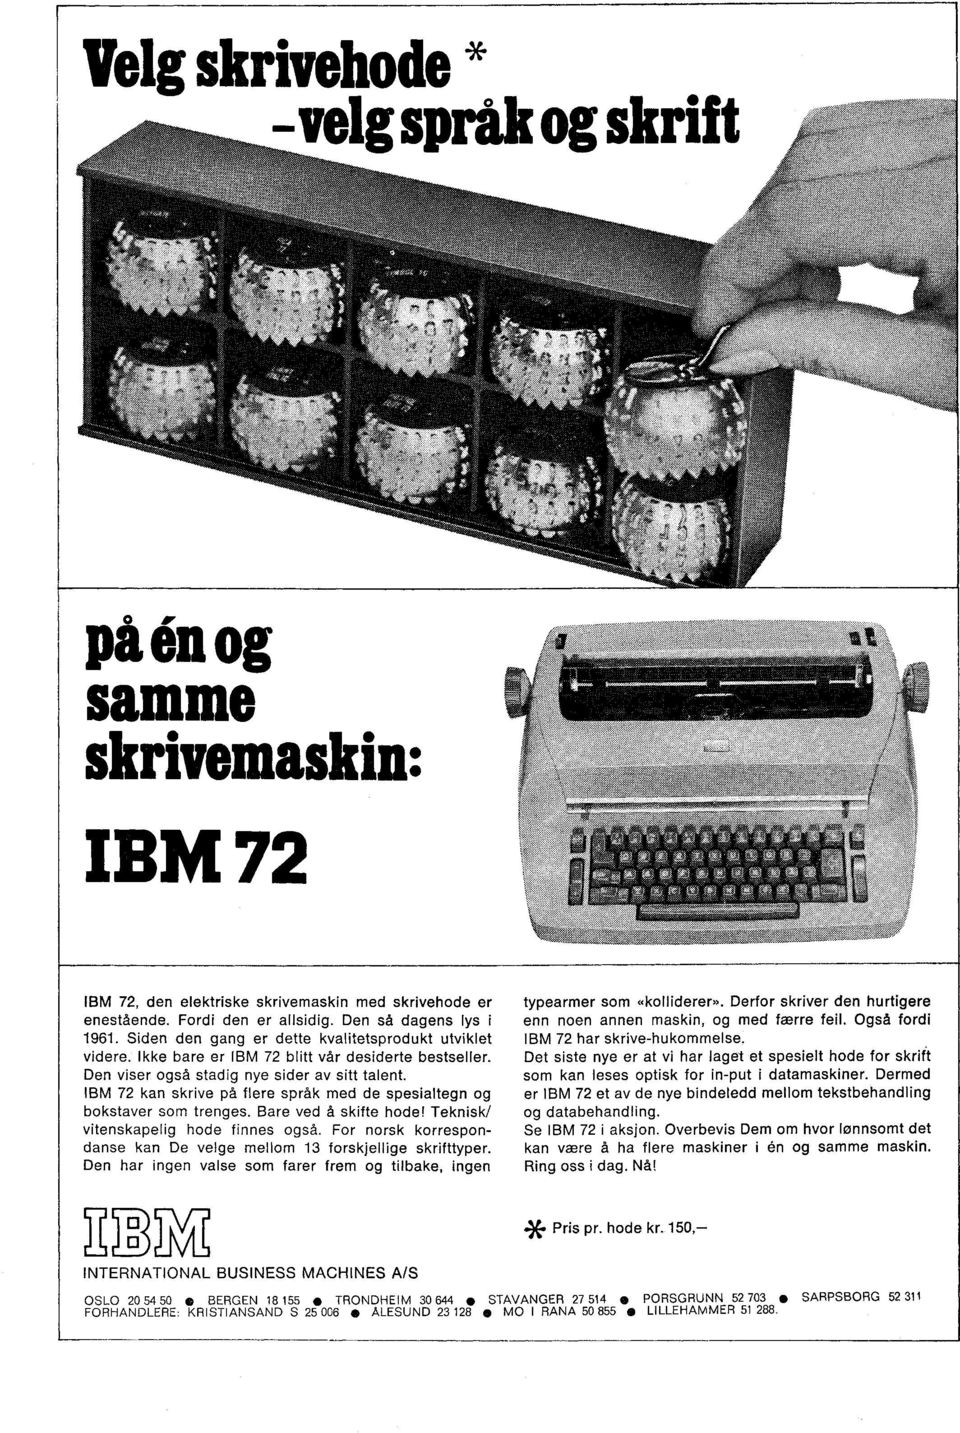 IBM 72 kan skrive på flere språk med de spesialtegn og bokstaver som trenges. Bare ved å skifte hode! Teknisk/ vitenskapelig hode finnes også.